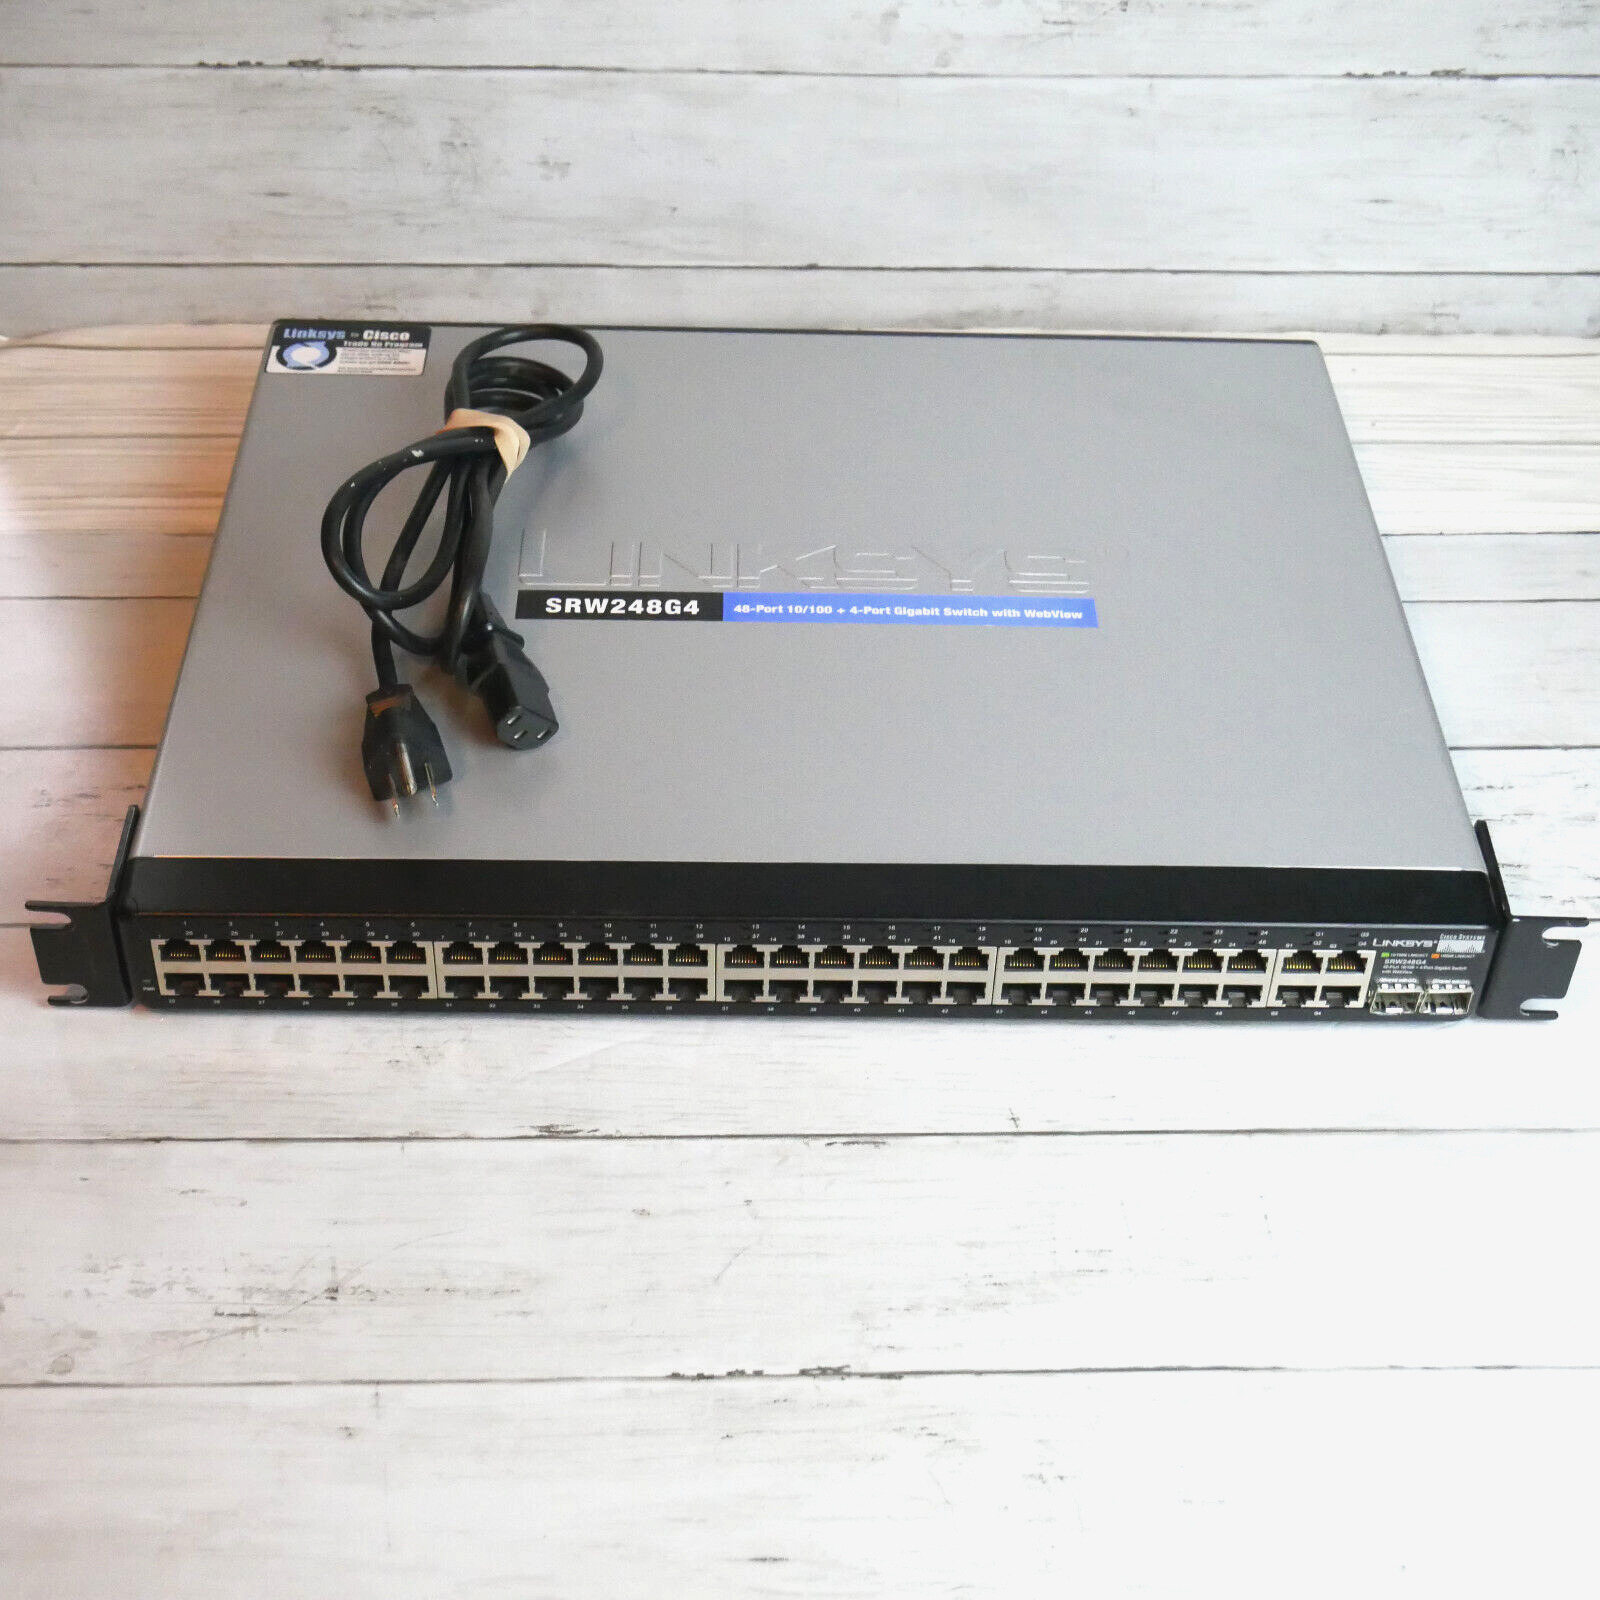 Cisco Linksys SRW248G4 48-Port 48x 10/100 + 4 Port Gigabit Switch w WebView READ